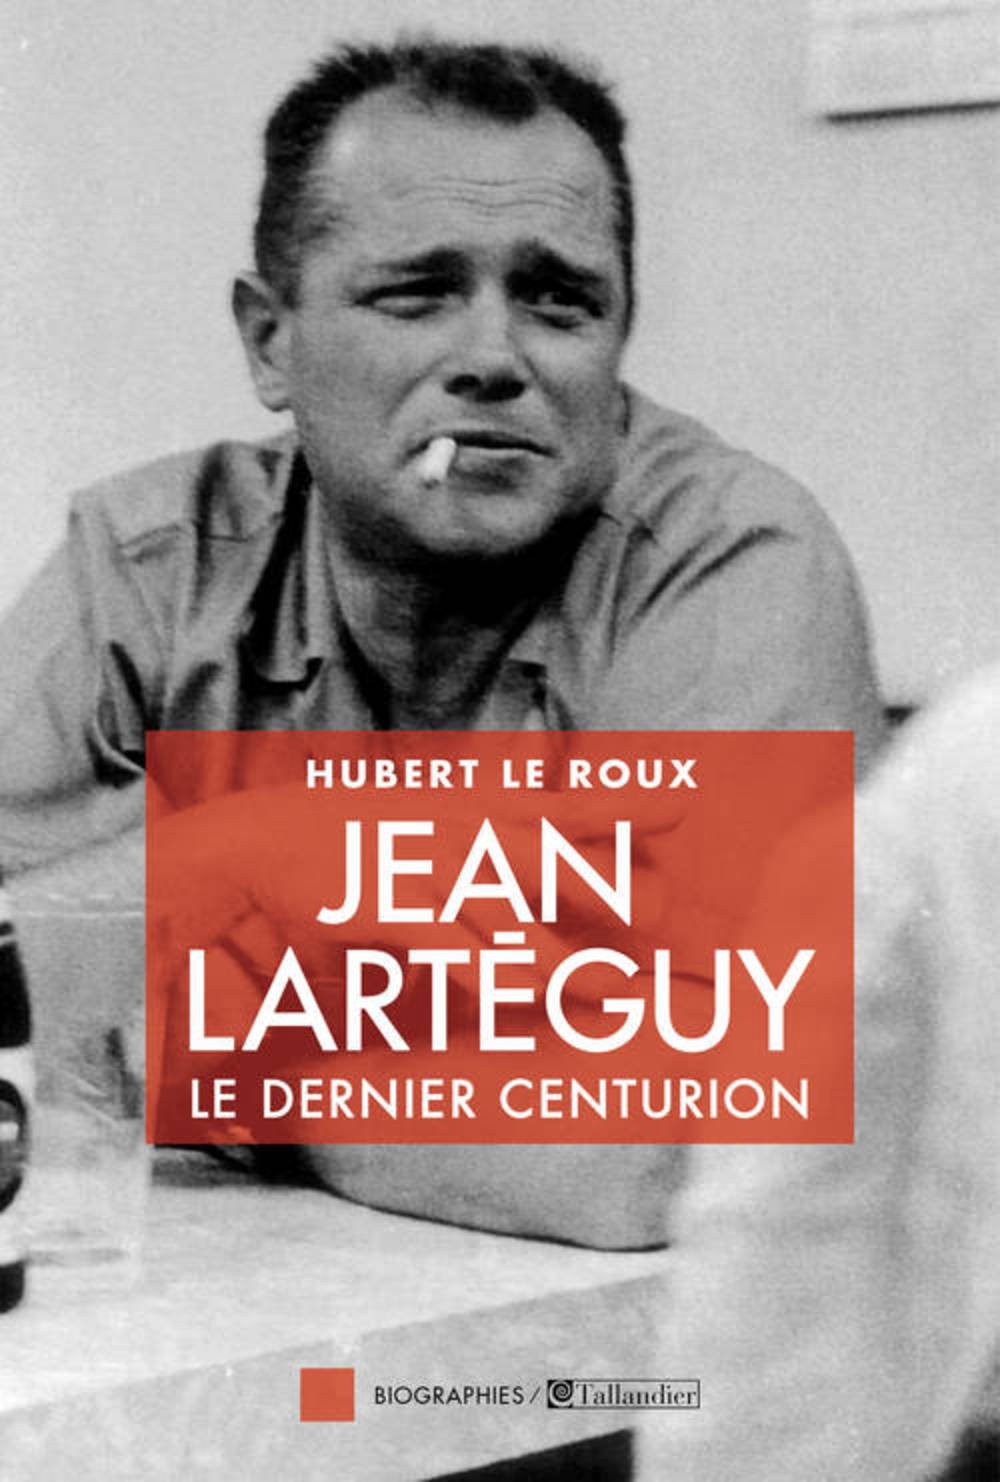 Jean Larteguy